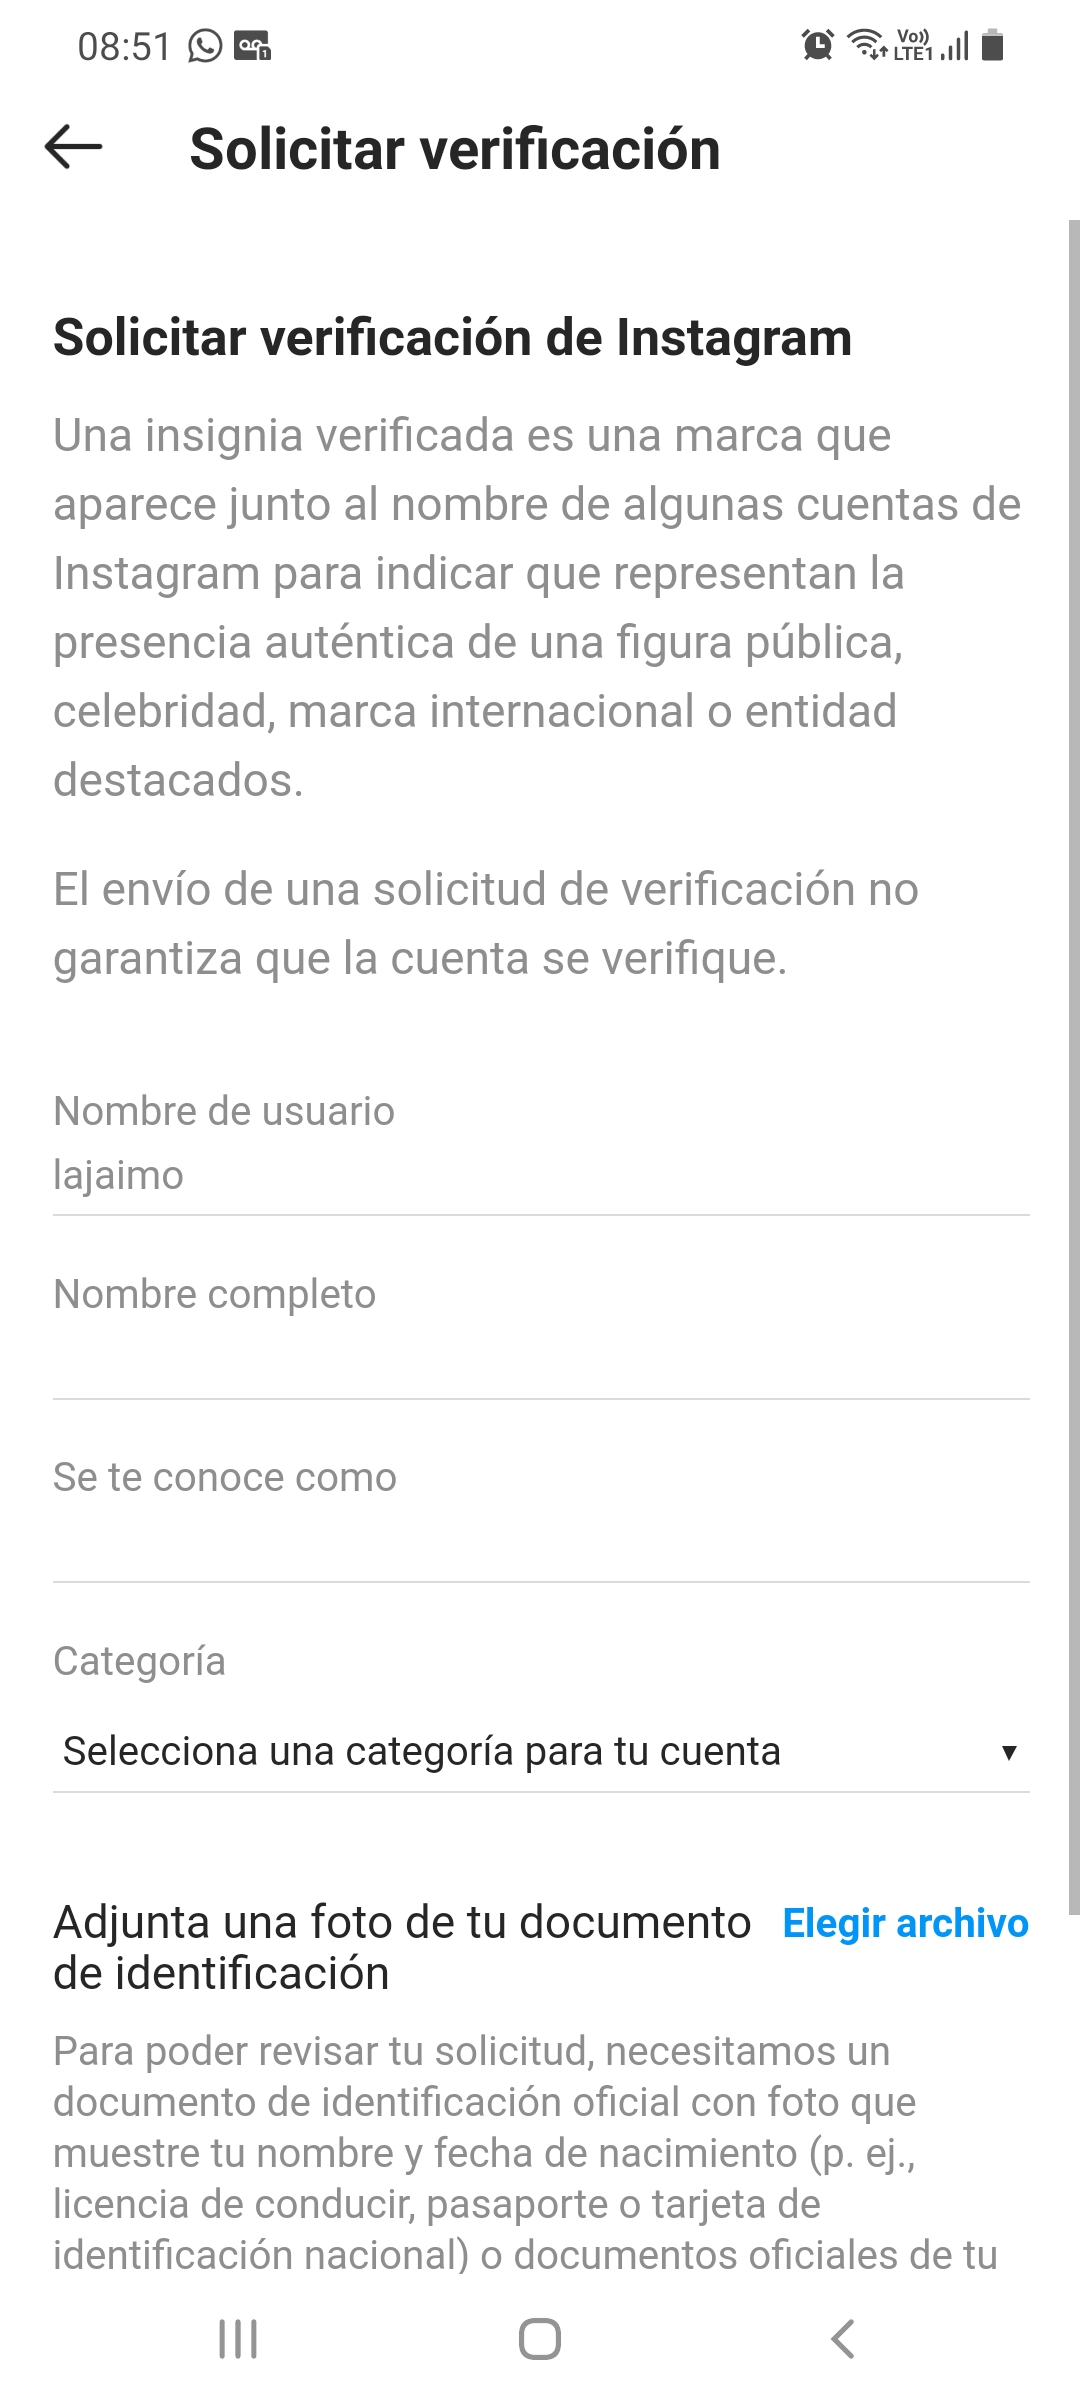 La solicitud de verificación se hace desde la app